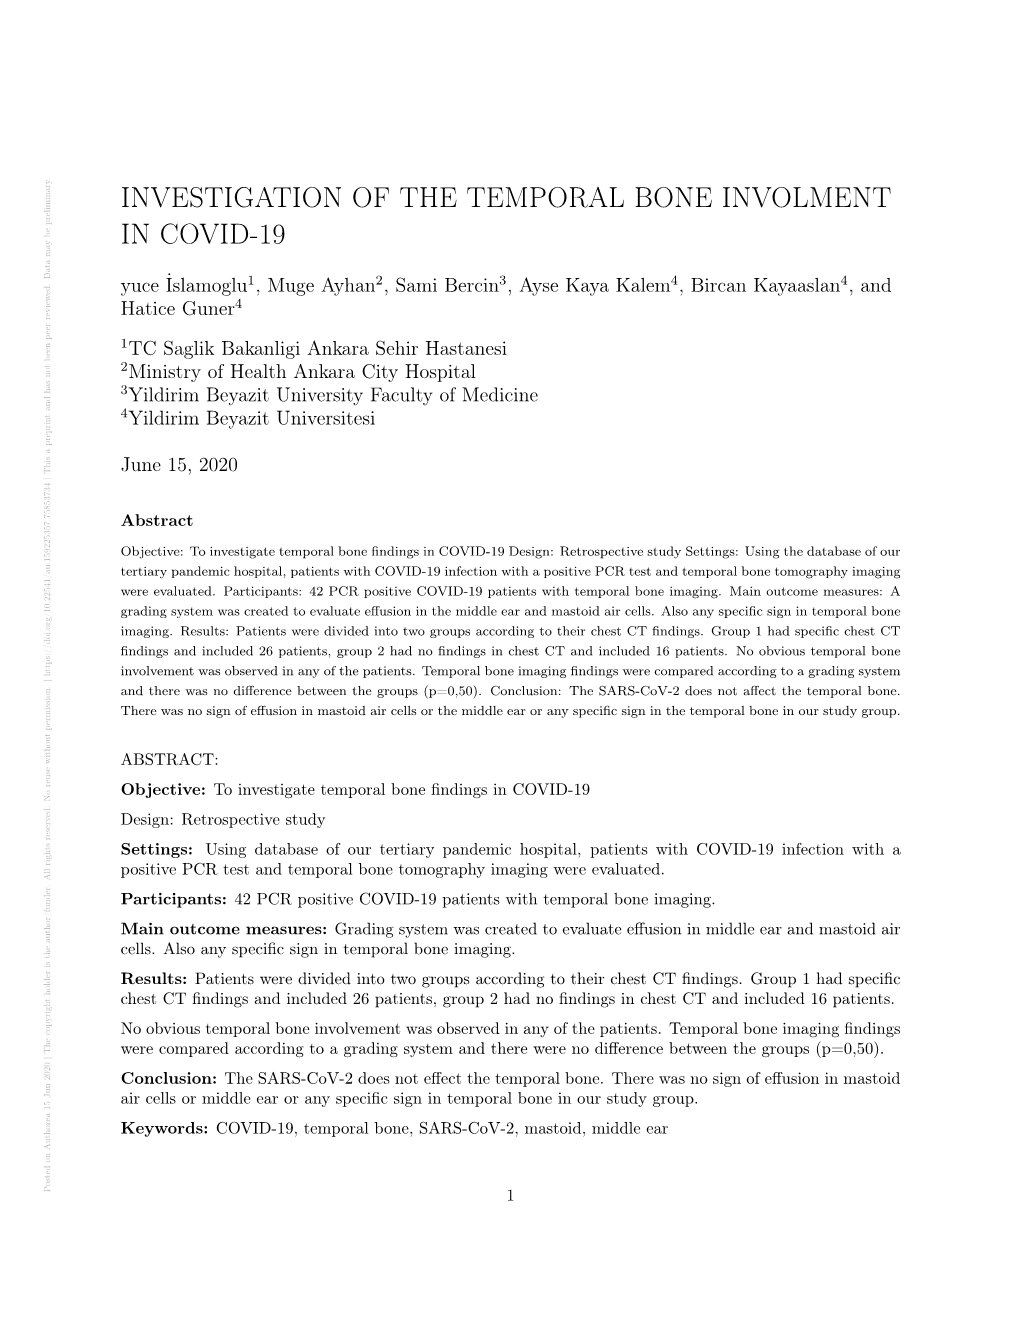 Investigation of the Temporal Bone Involment in Covid-19